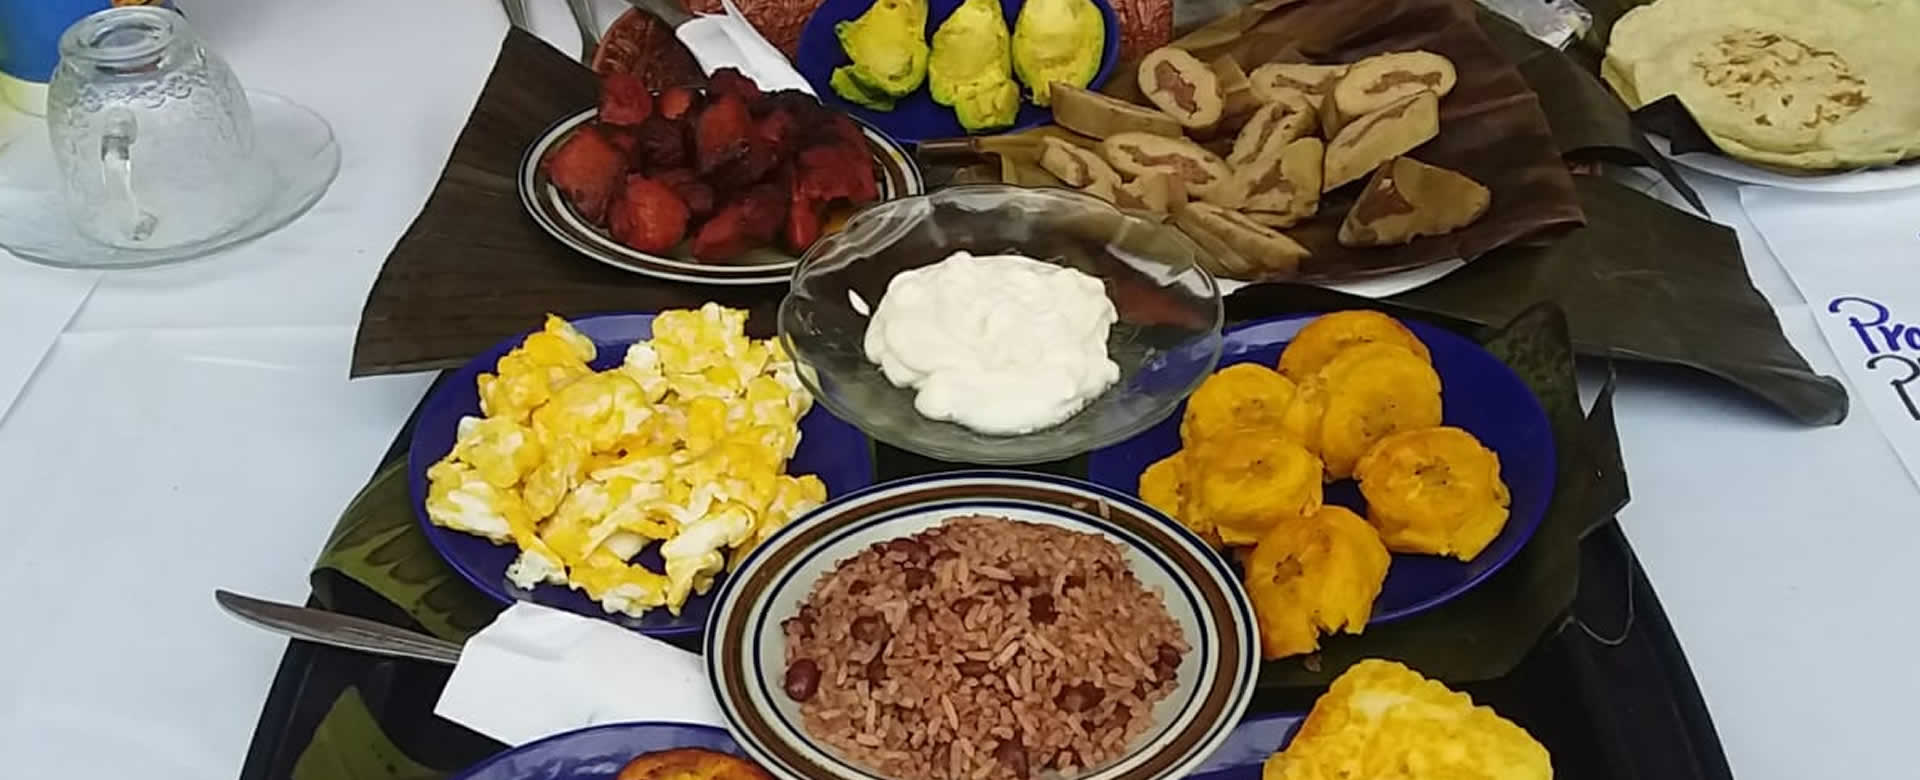 Comienza el Primer Festival Gastronómico “Sabores De Mi Patria” en Jinotega